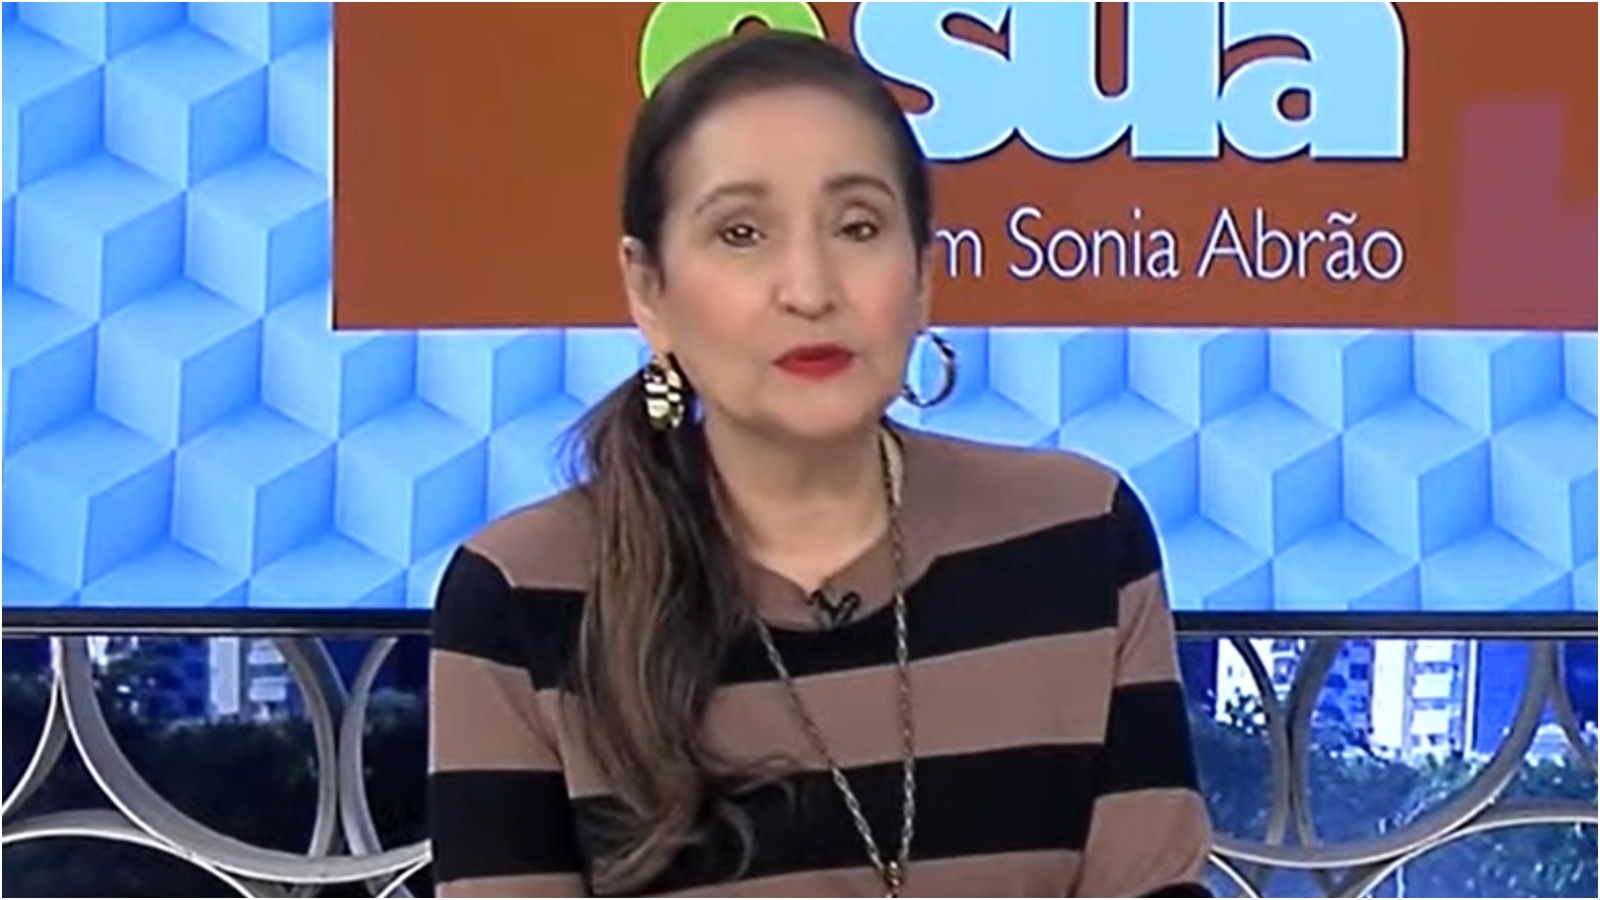 Saiba quando Sonia Abrão retorna à TV após ser afastada por problema de saúde